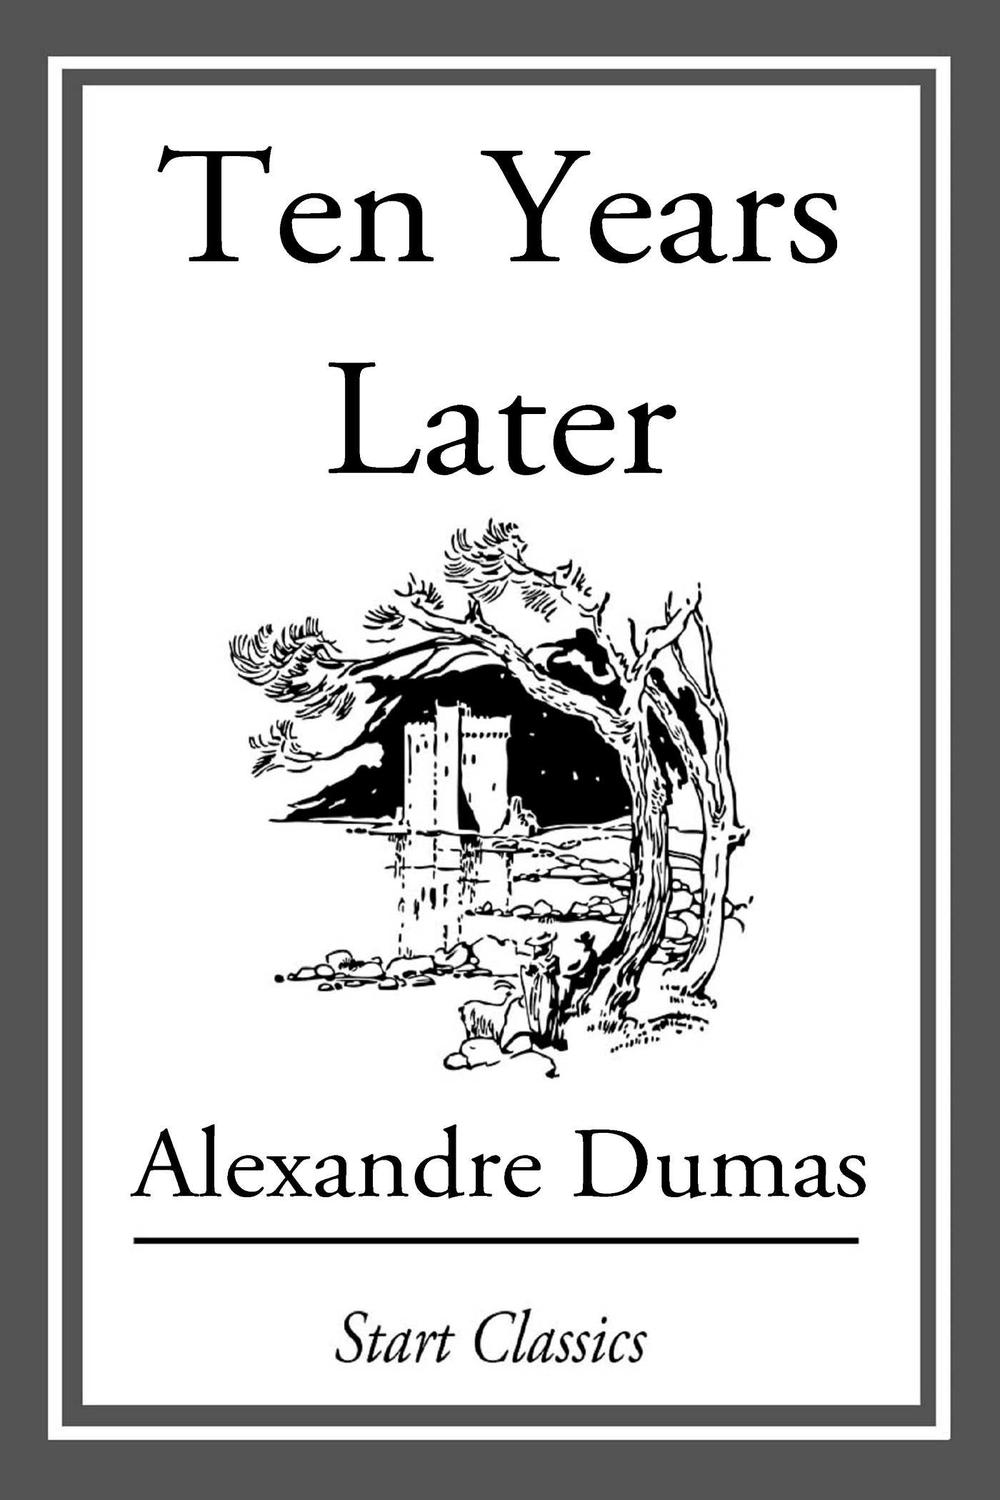 Ten Years Later - Alexandre Dumas